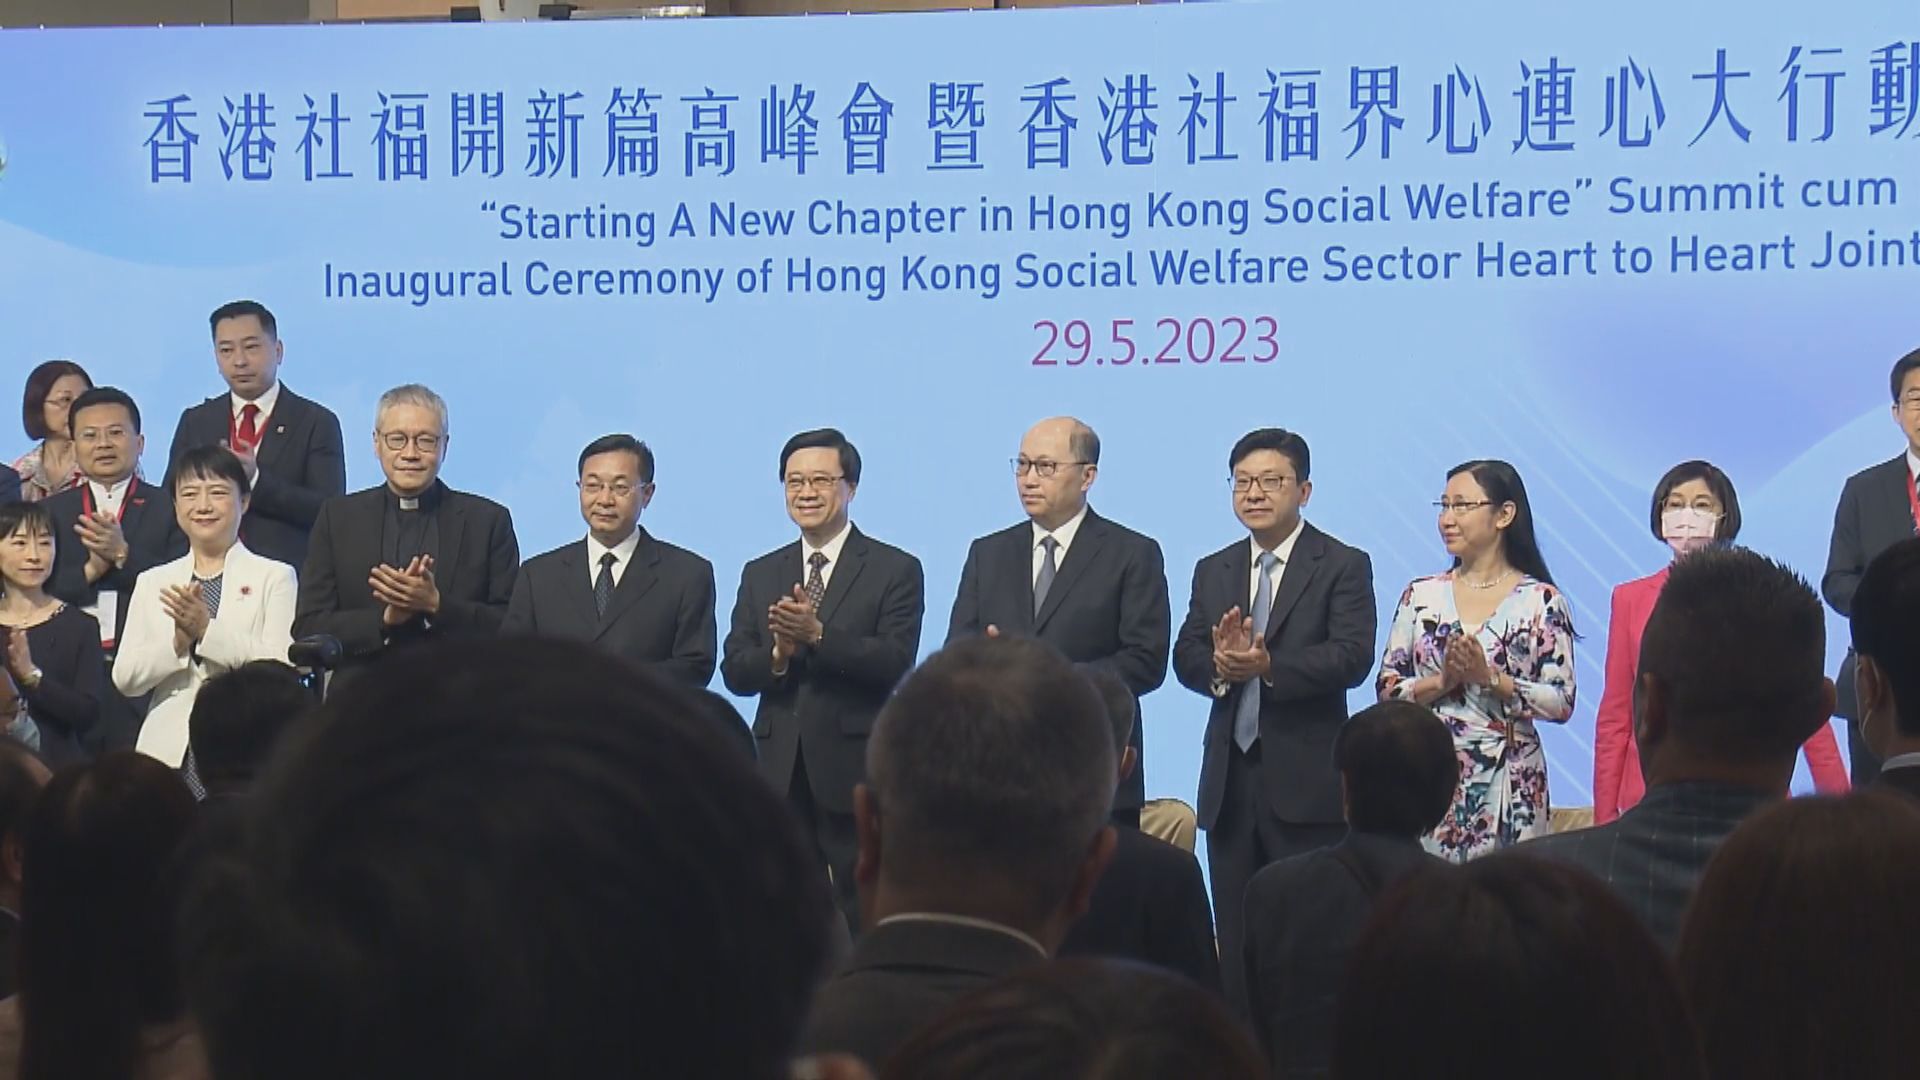 「香港社福界心連心大行動」舉行成立典禮